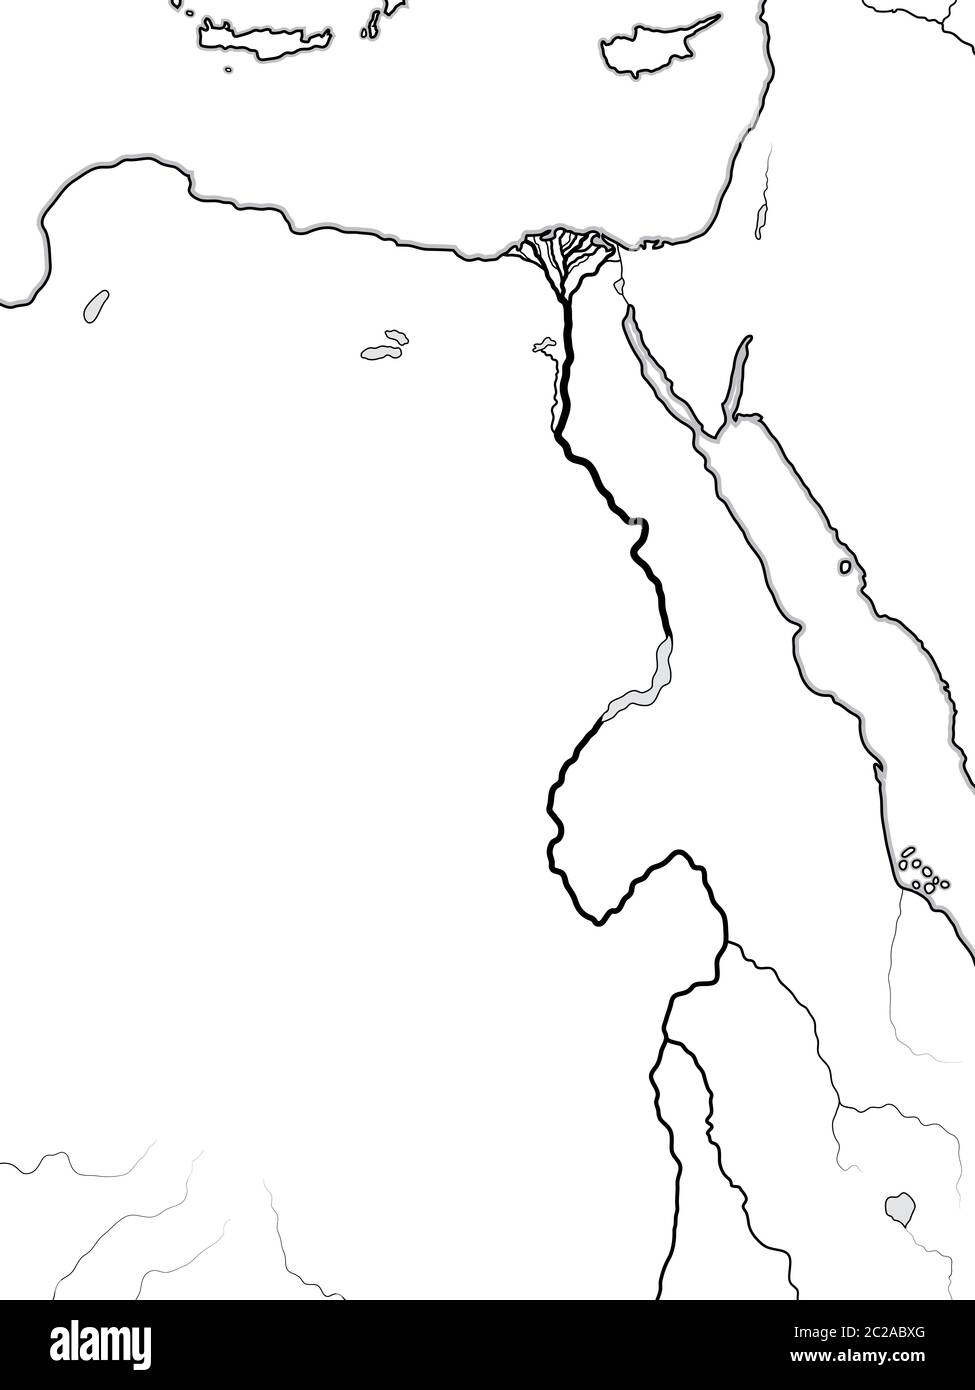 Carte du monde de L'EGYPTE, DE LA NUBIE, DE LA LIBYE : Egypte ancienne, Libye, Nubie, Nil et Delta. Carte géographique. Banque D'Images